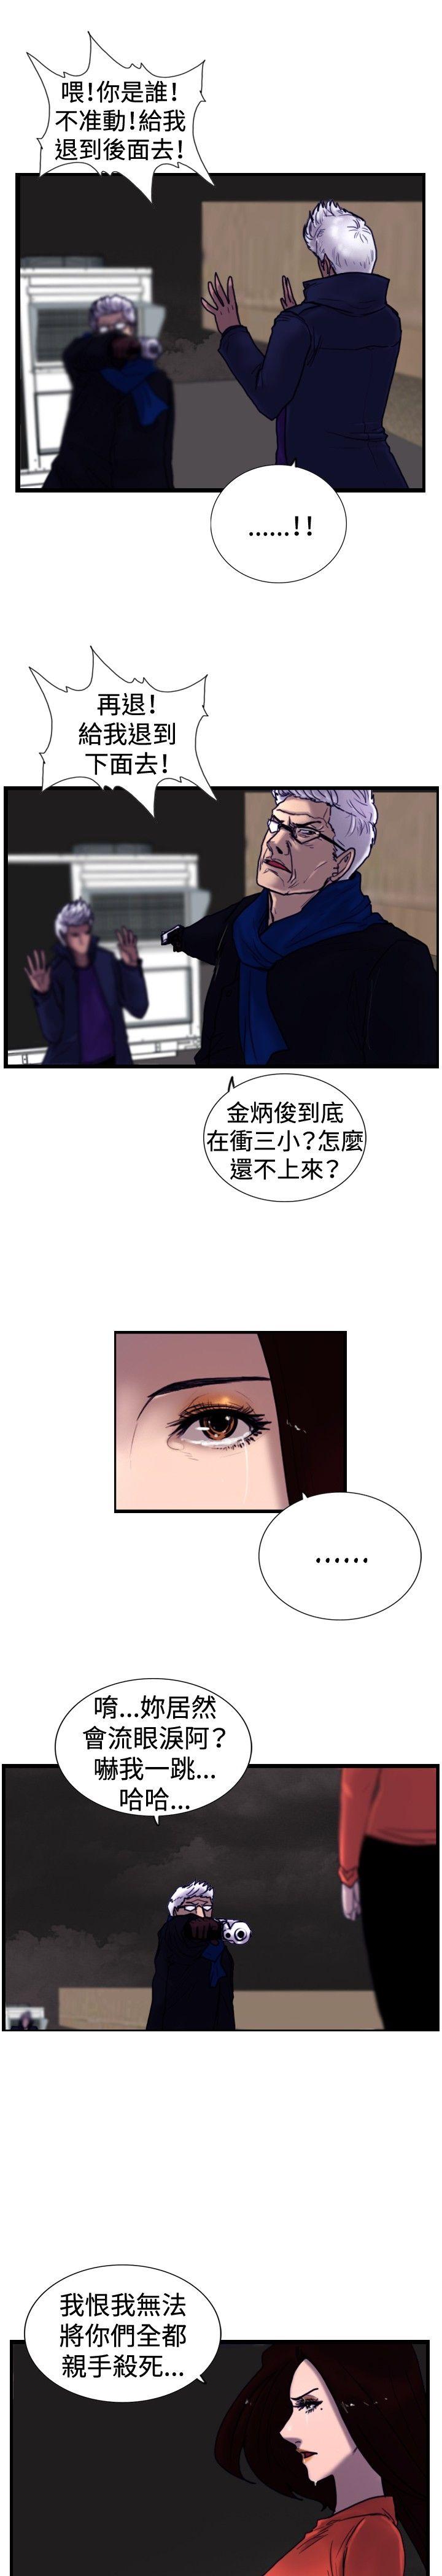 觉醒(完结)  最终话 漫画图片3.jpg